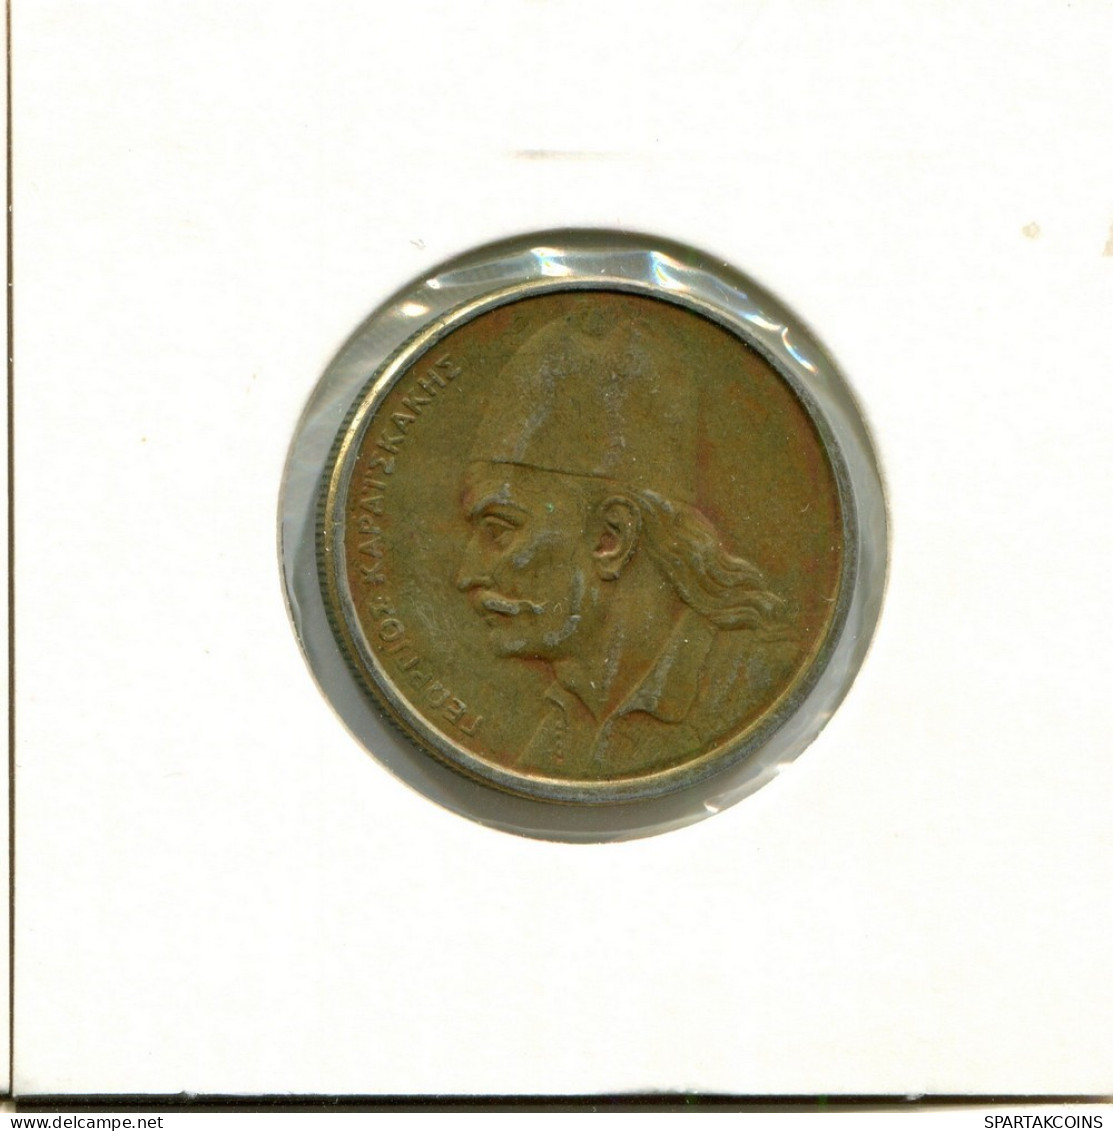 2 DRACHMES 1984 GRECIA GREECE Moneda #AY338.E.A - Griechenland